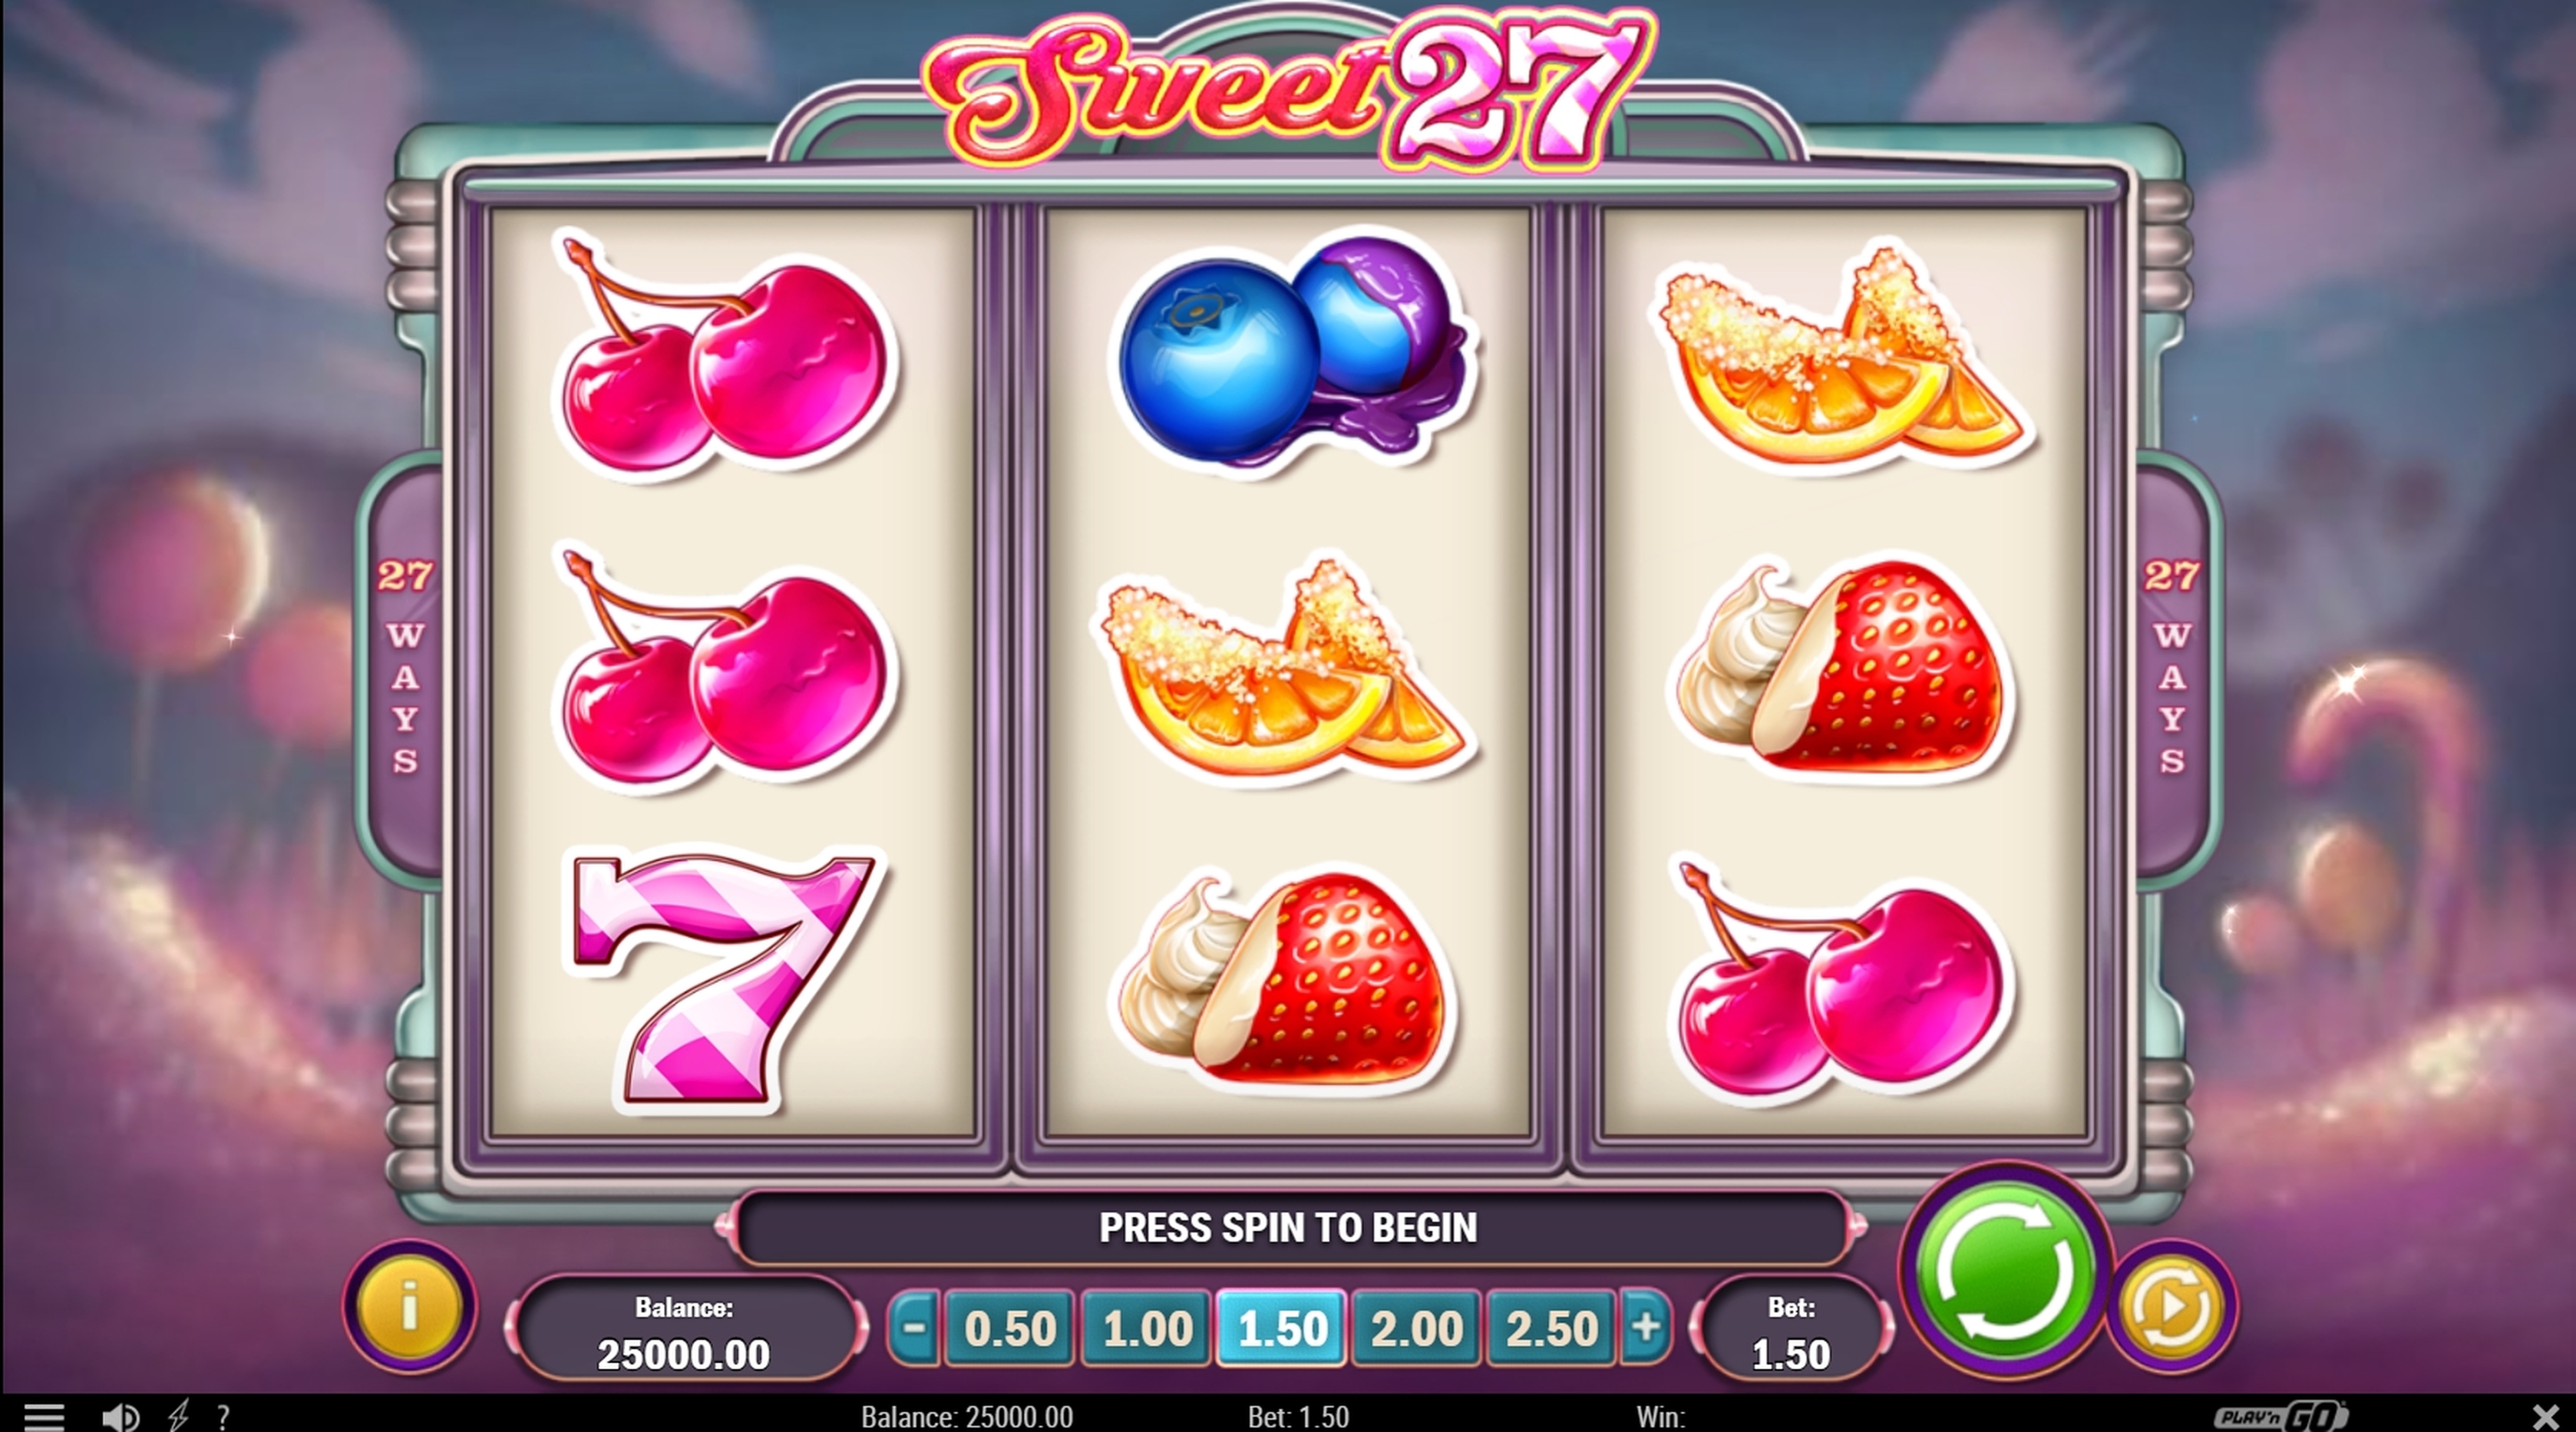 Reels in Sweet 27 Slot Game by Playn GO